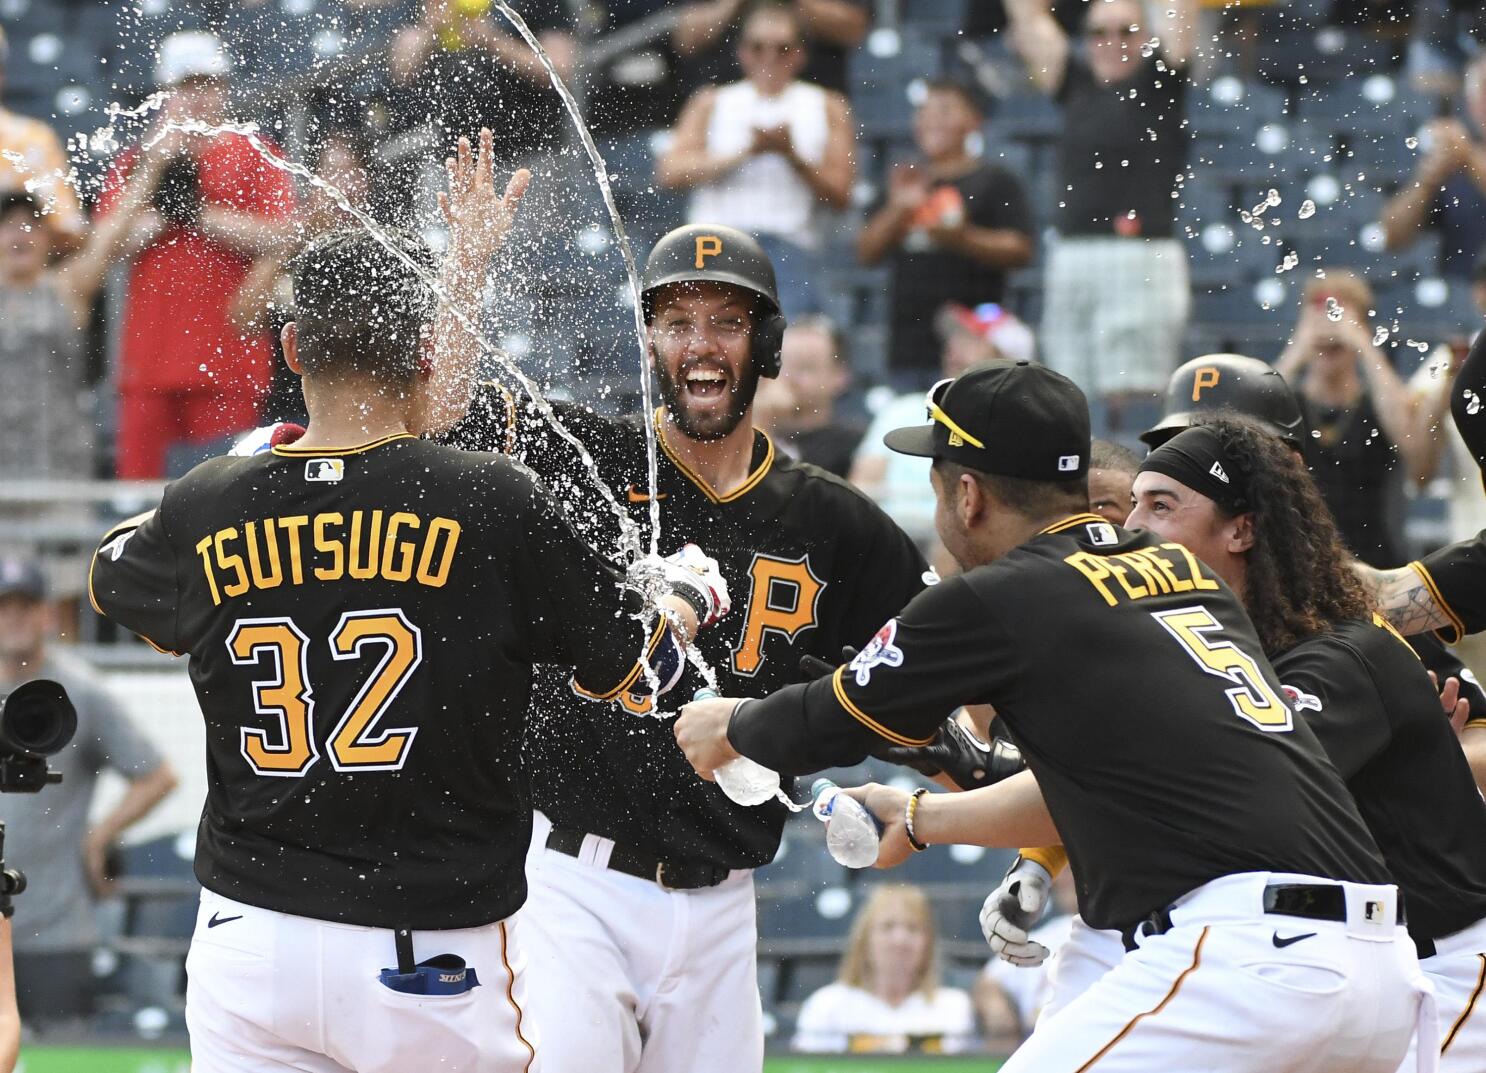 Yoshi Tsutsugo lifts Pirates past Cardinals, as Mars alum David Bednar  earns 1st MLB save